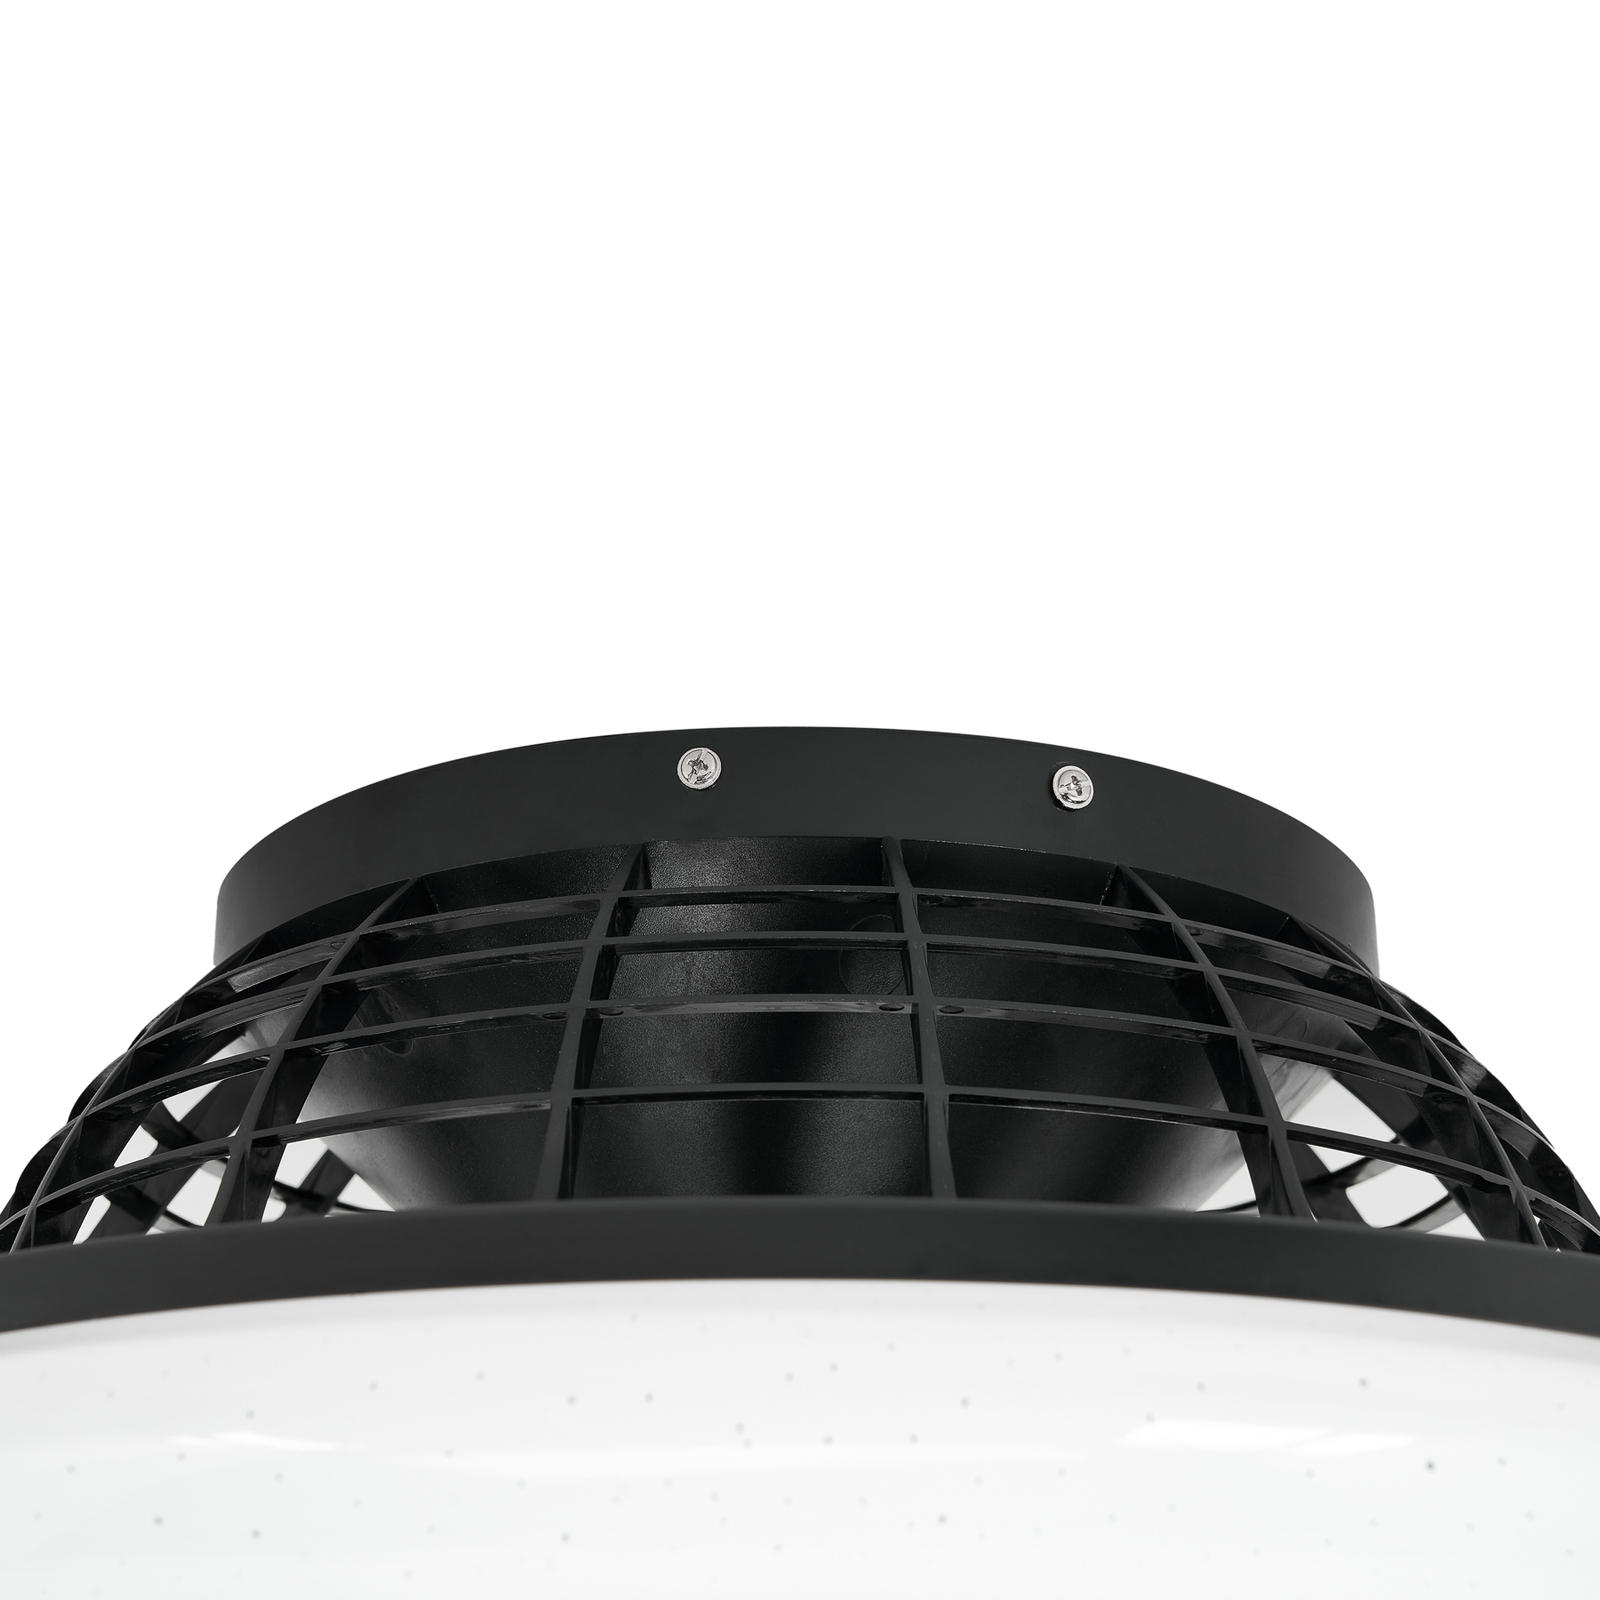 Starluna Fjardo stropný LED ventilátor osvetlením